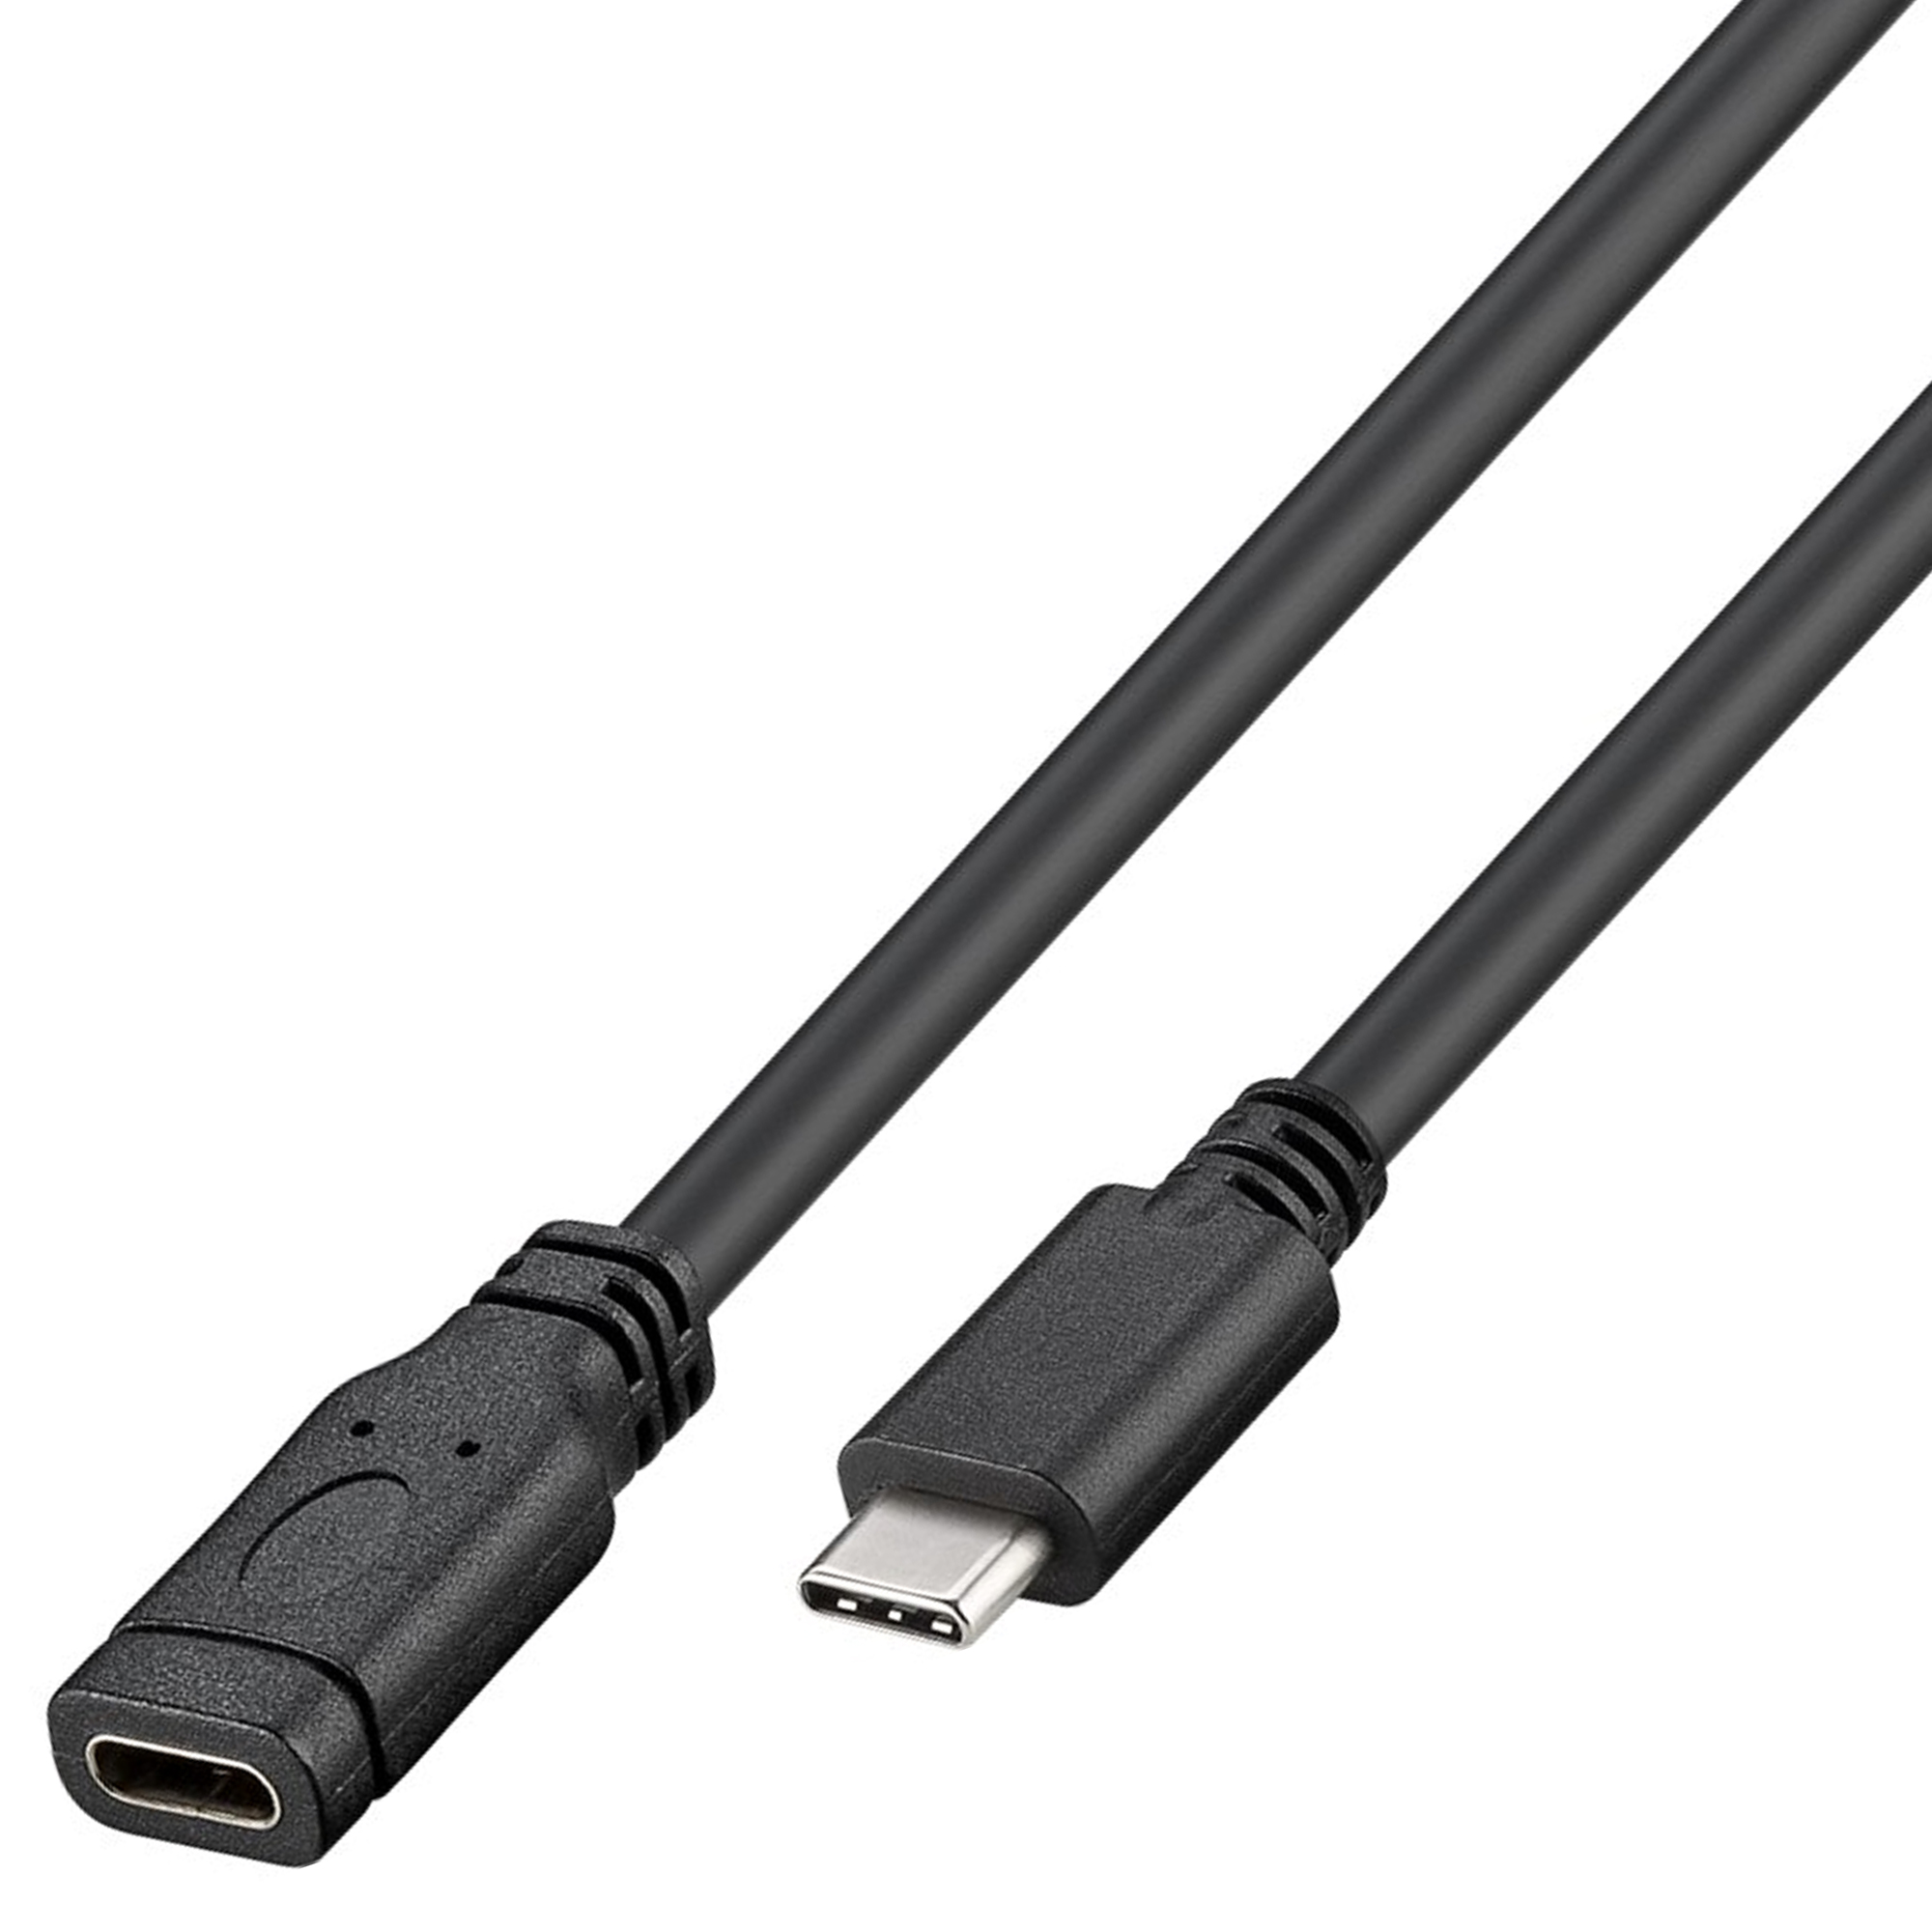 USB-C Verlängerung USB 3.1 Generation 1 von USB-C auf USB-C Länge 1 Meter Farbe Schwarz